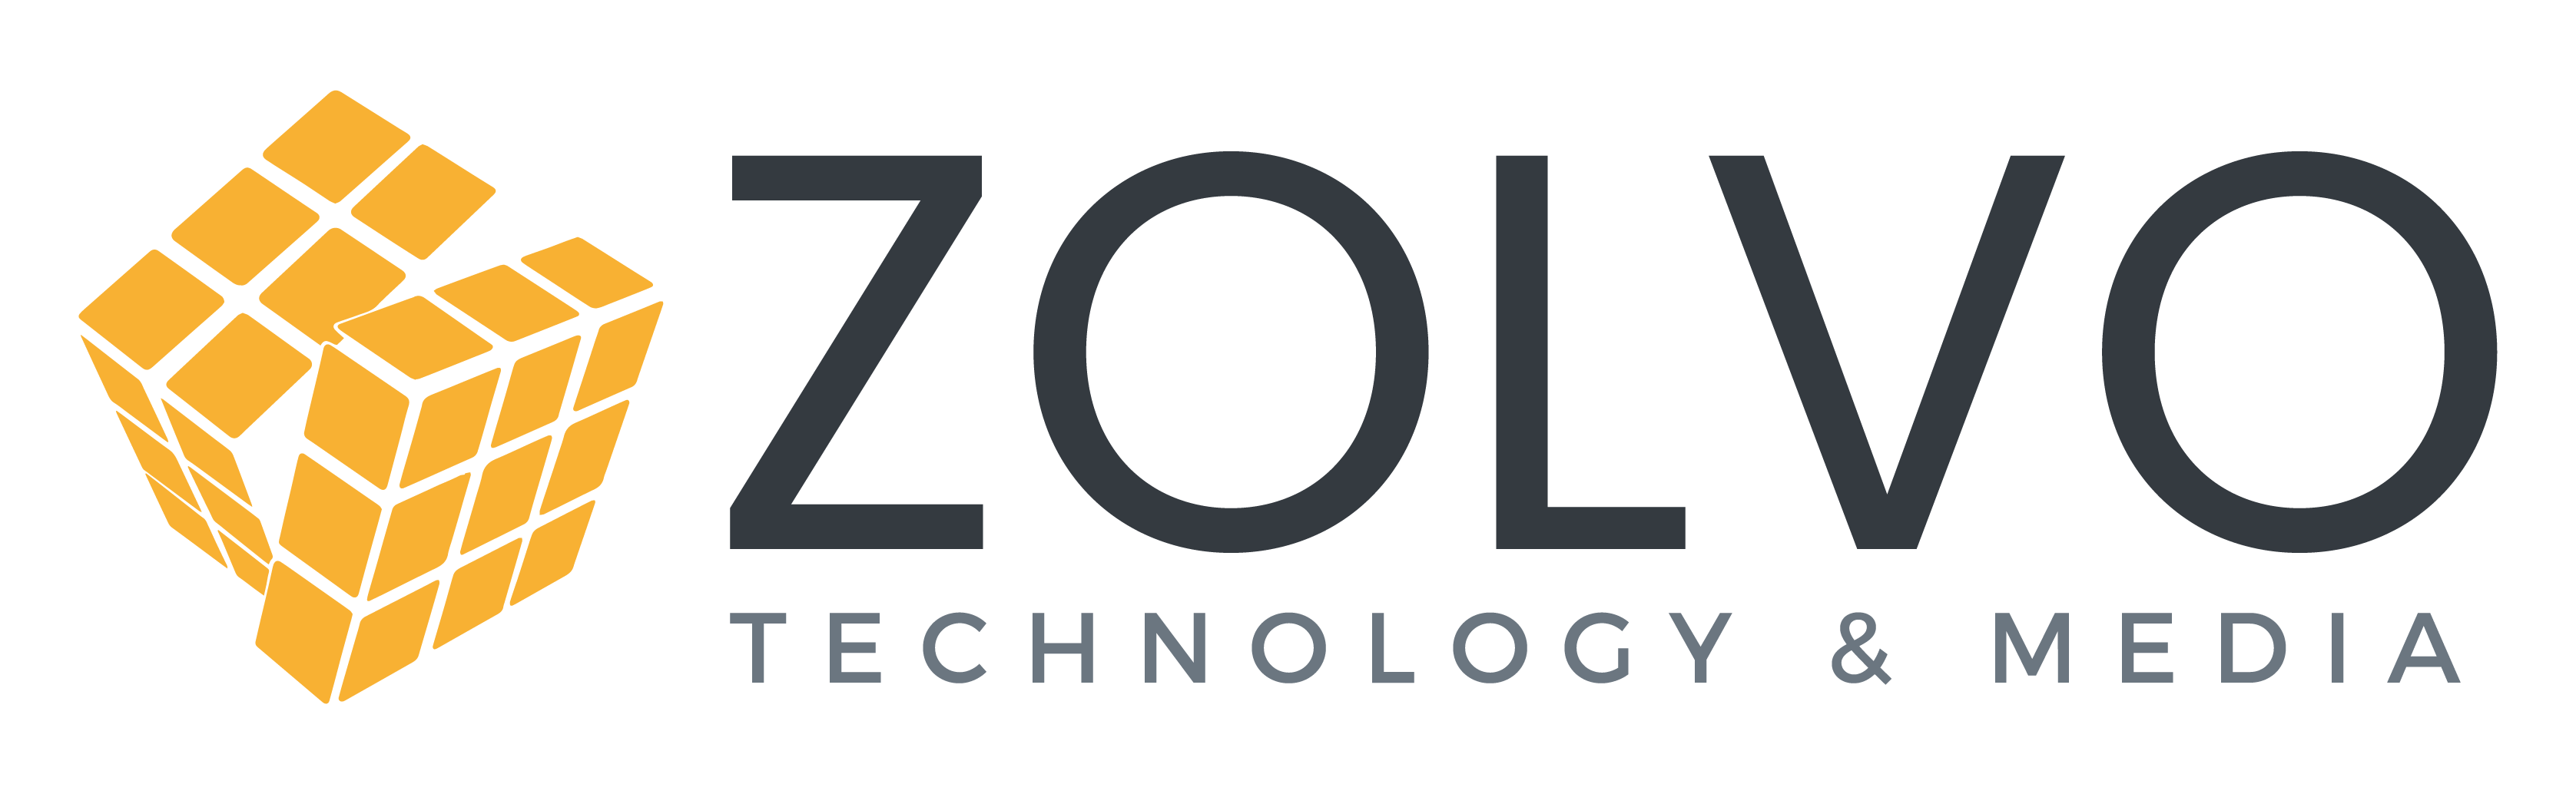 Zolvo Technology & Media Logo